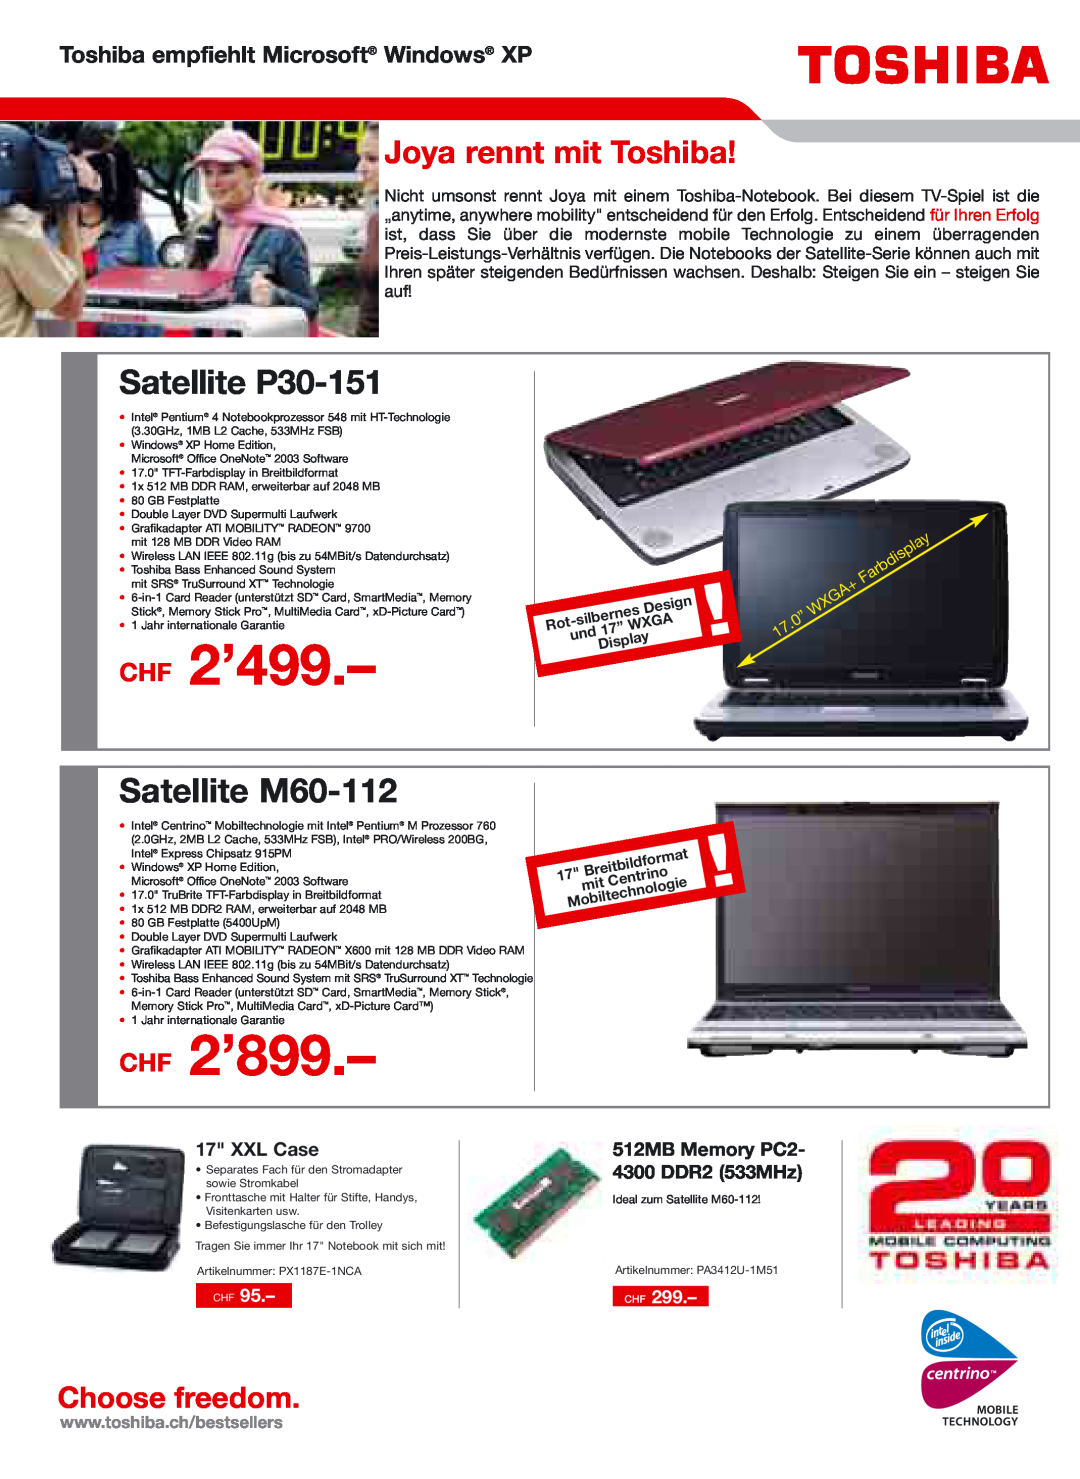 Toshiba Portg R200 CHF 2’899, Satellite P30-151, Satellite M60-112, Joya rennt mit Toshiba, XXL Case, CHF 2’499, Design 